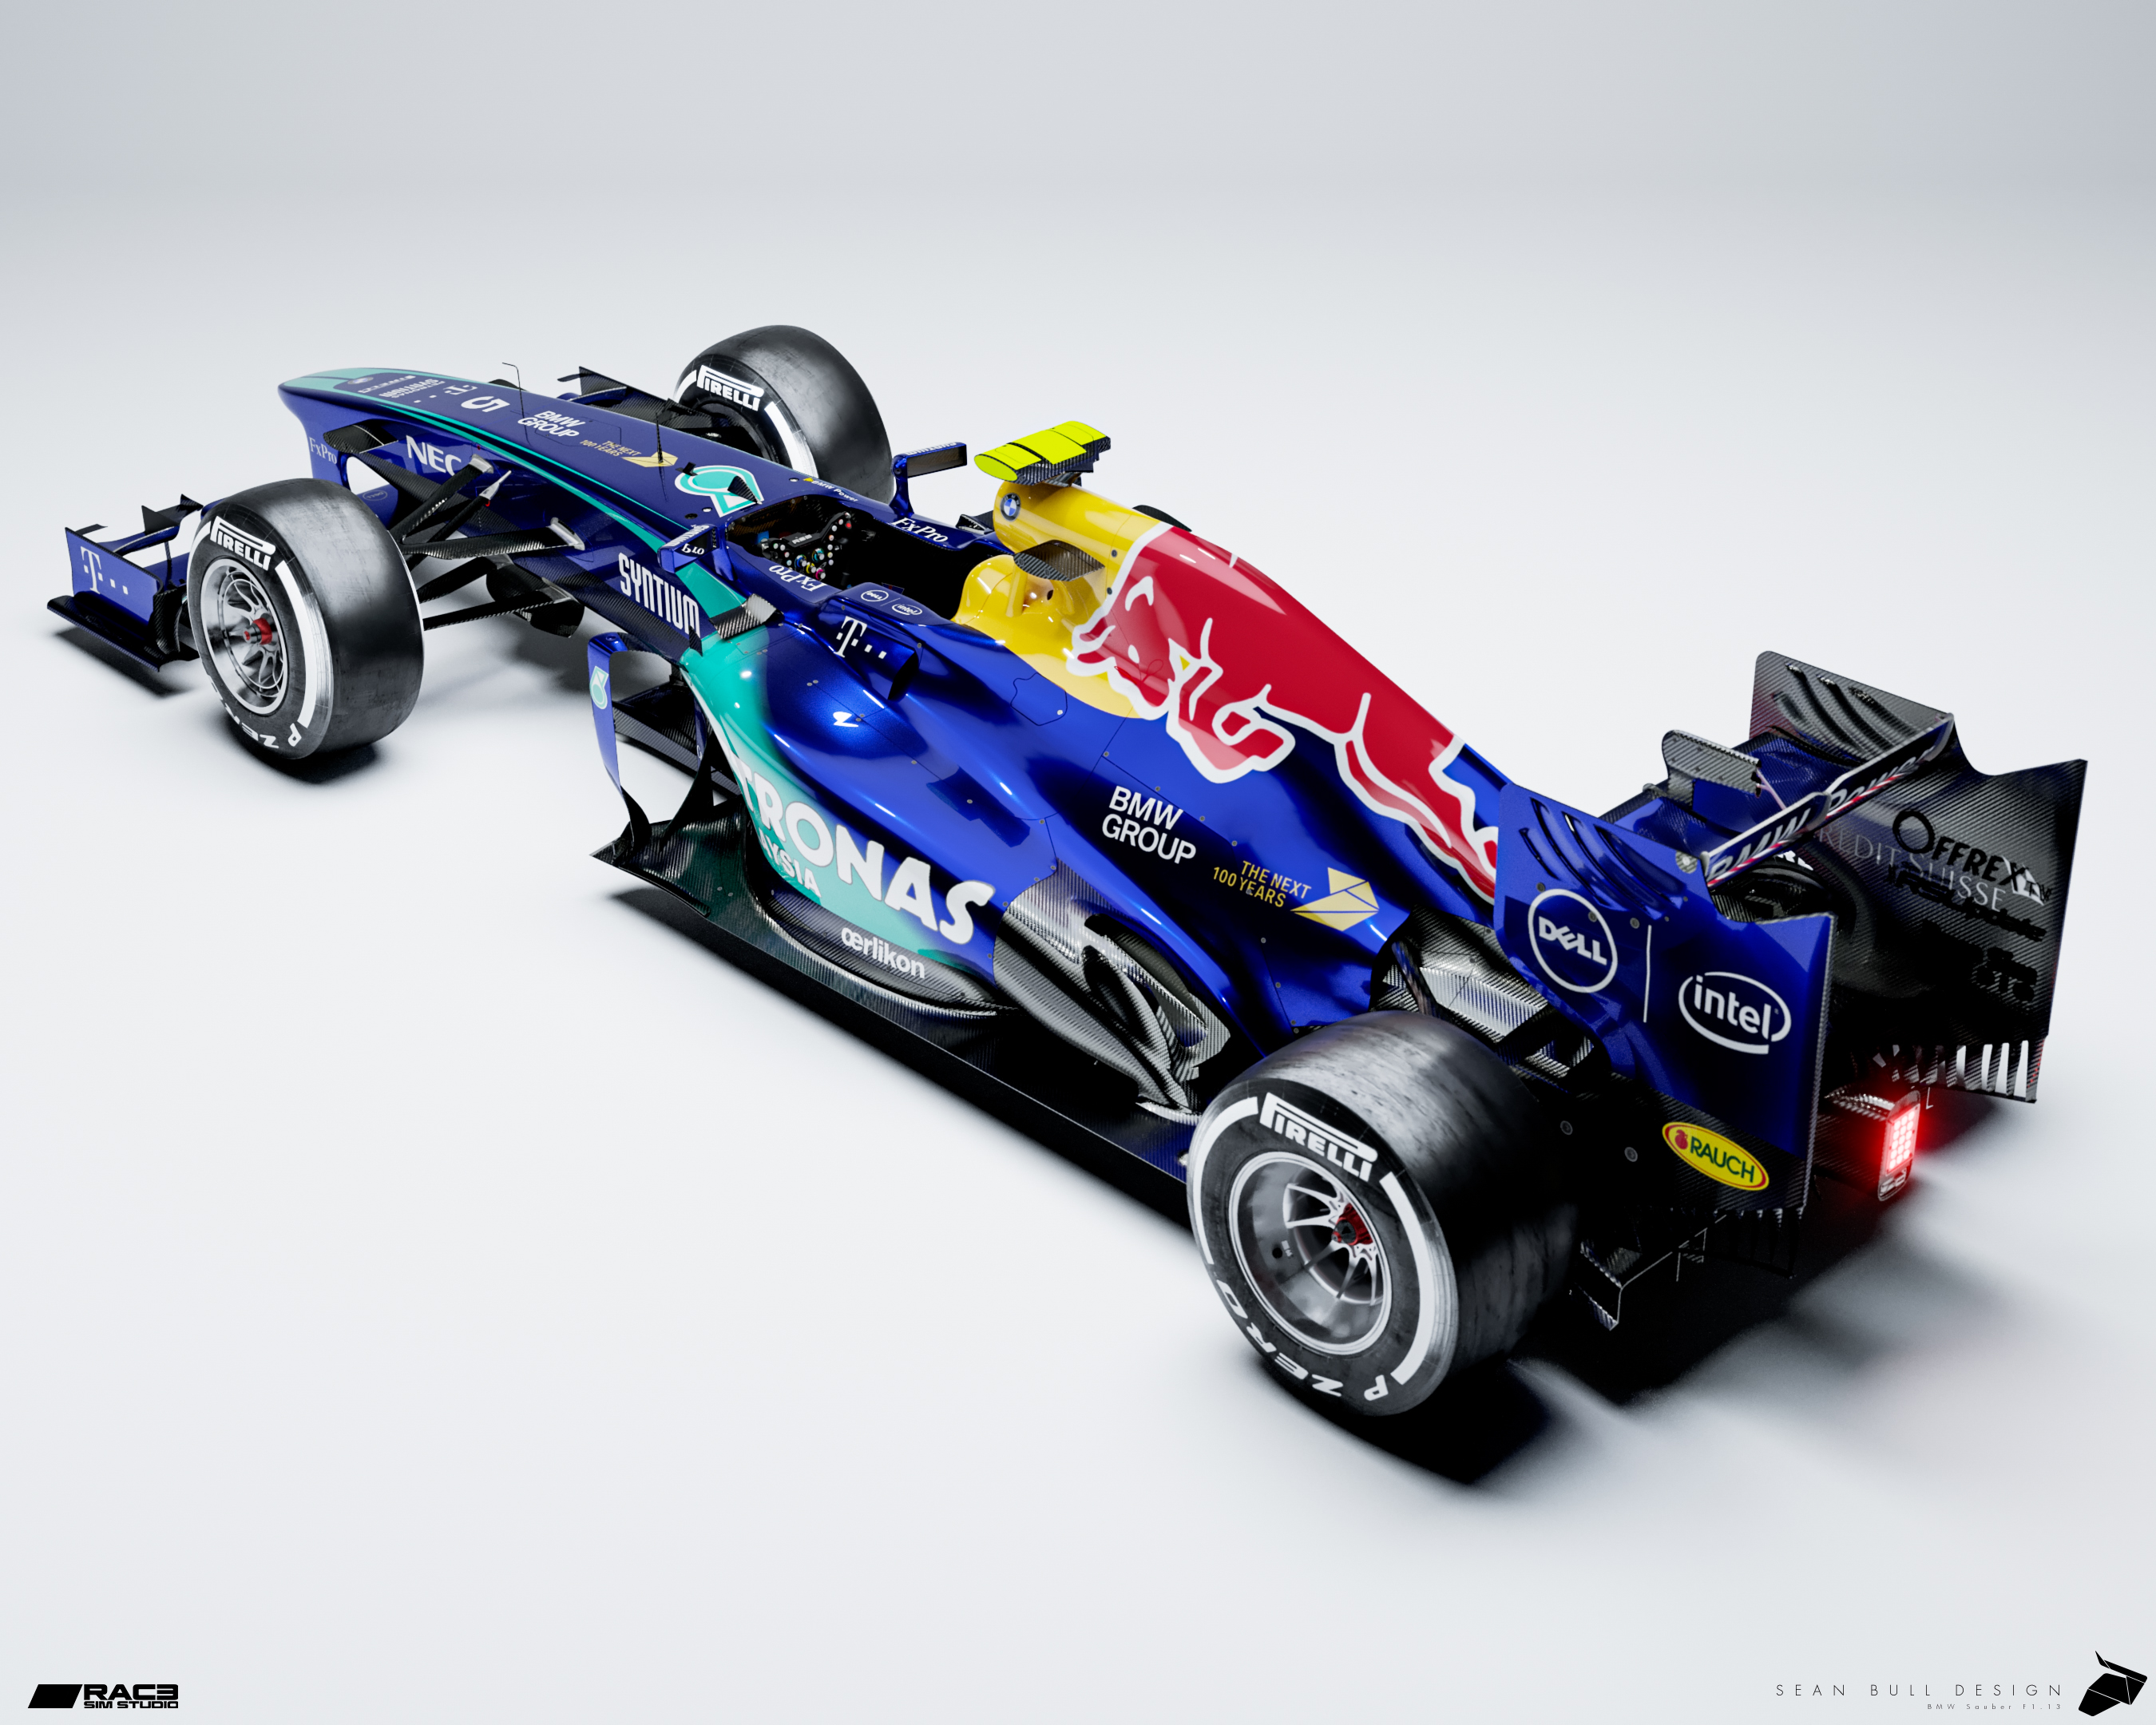 Sauber F1 Team Motorsport AG Formula 1 Auto Car Motor Automobile Racing Patch 